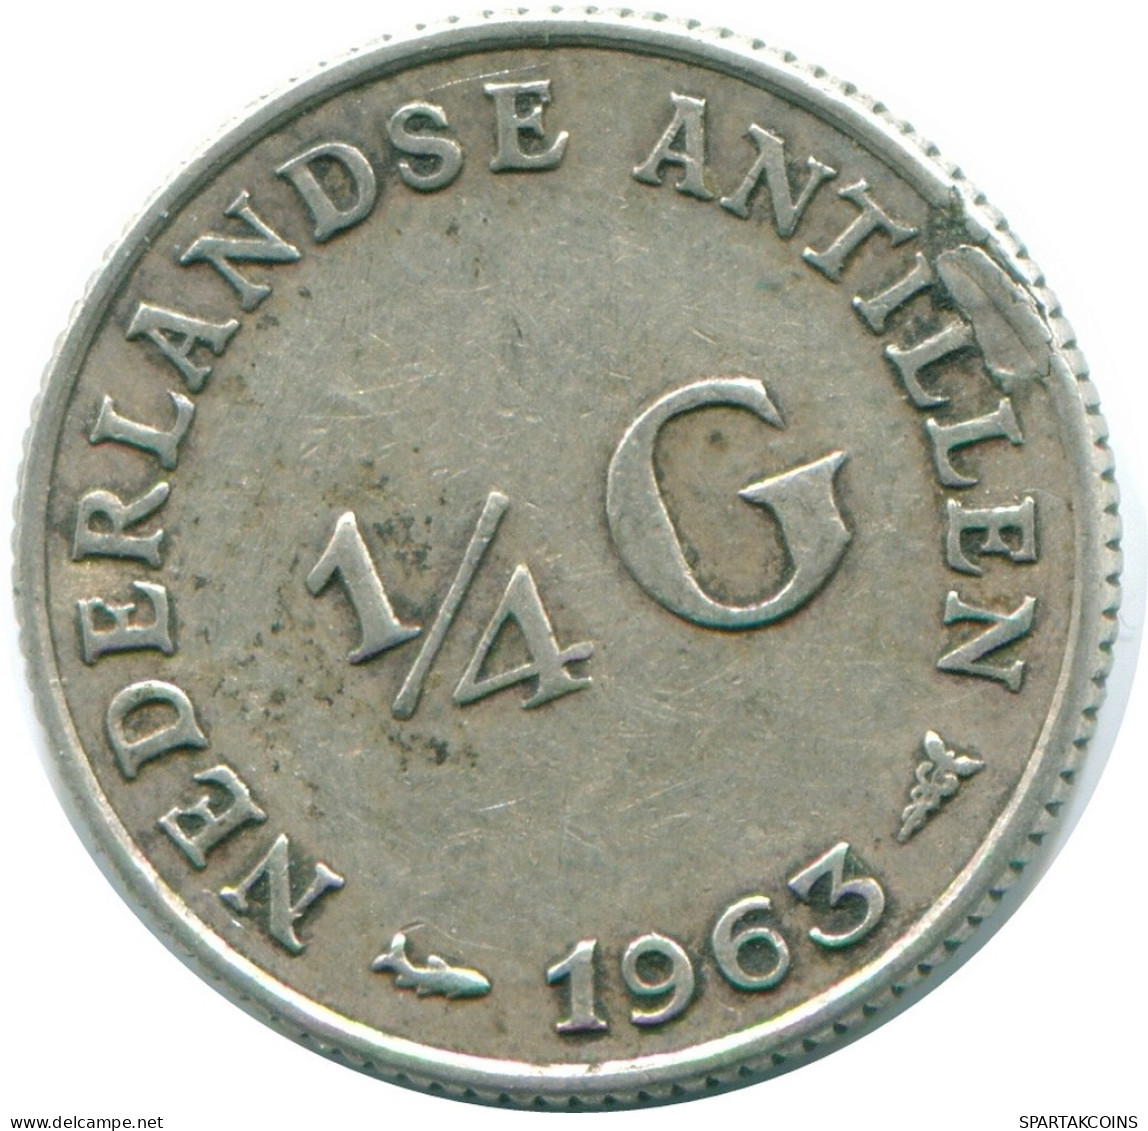 1/4 GULDEN 1963 NIEDERLÄNDISCHE ANTILLEN SILBER Koloniale Münze #NL11234.4.D.A - Antille Olandesi